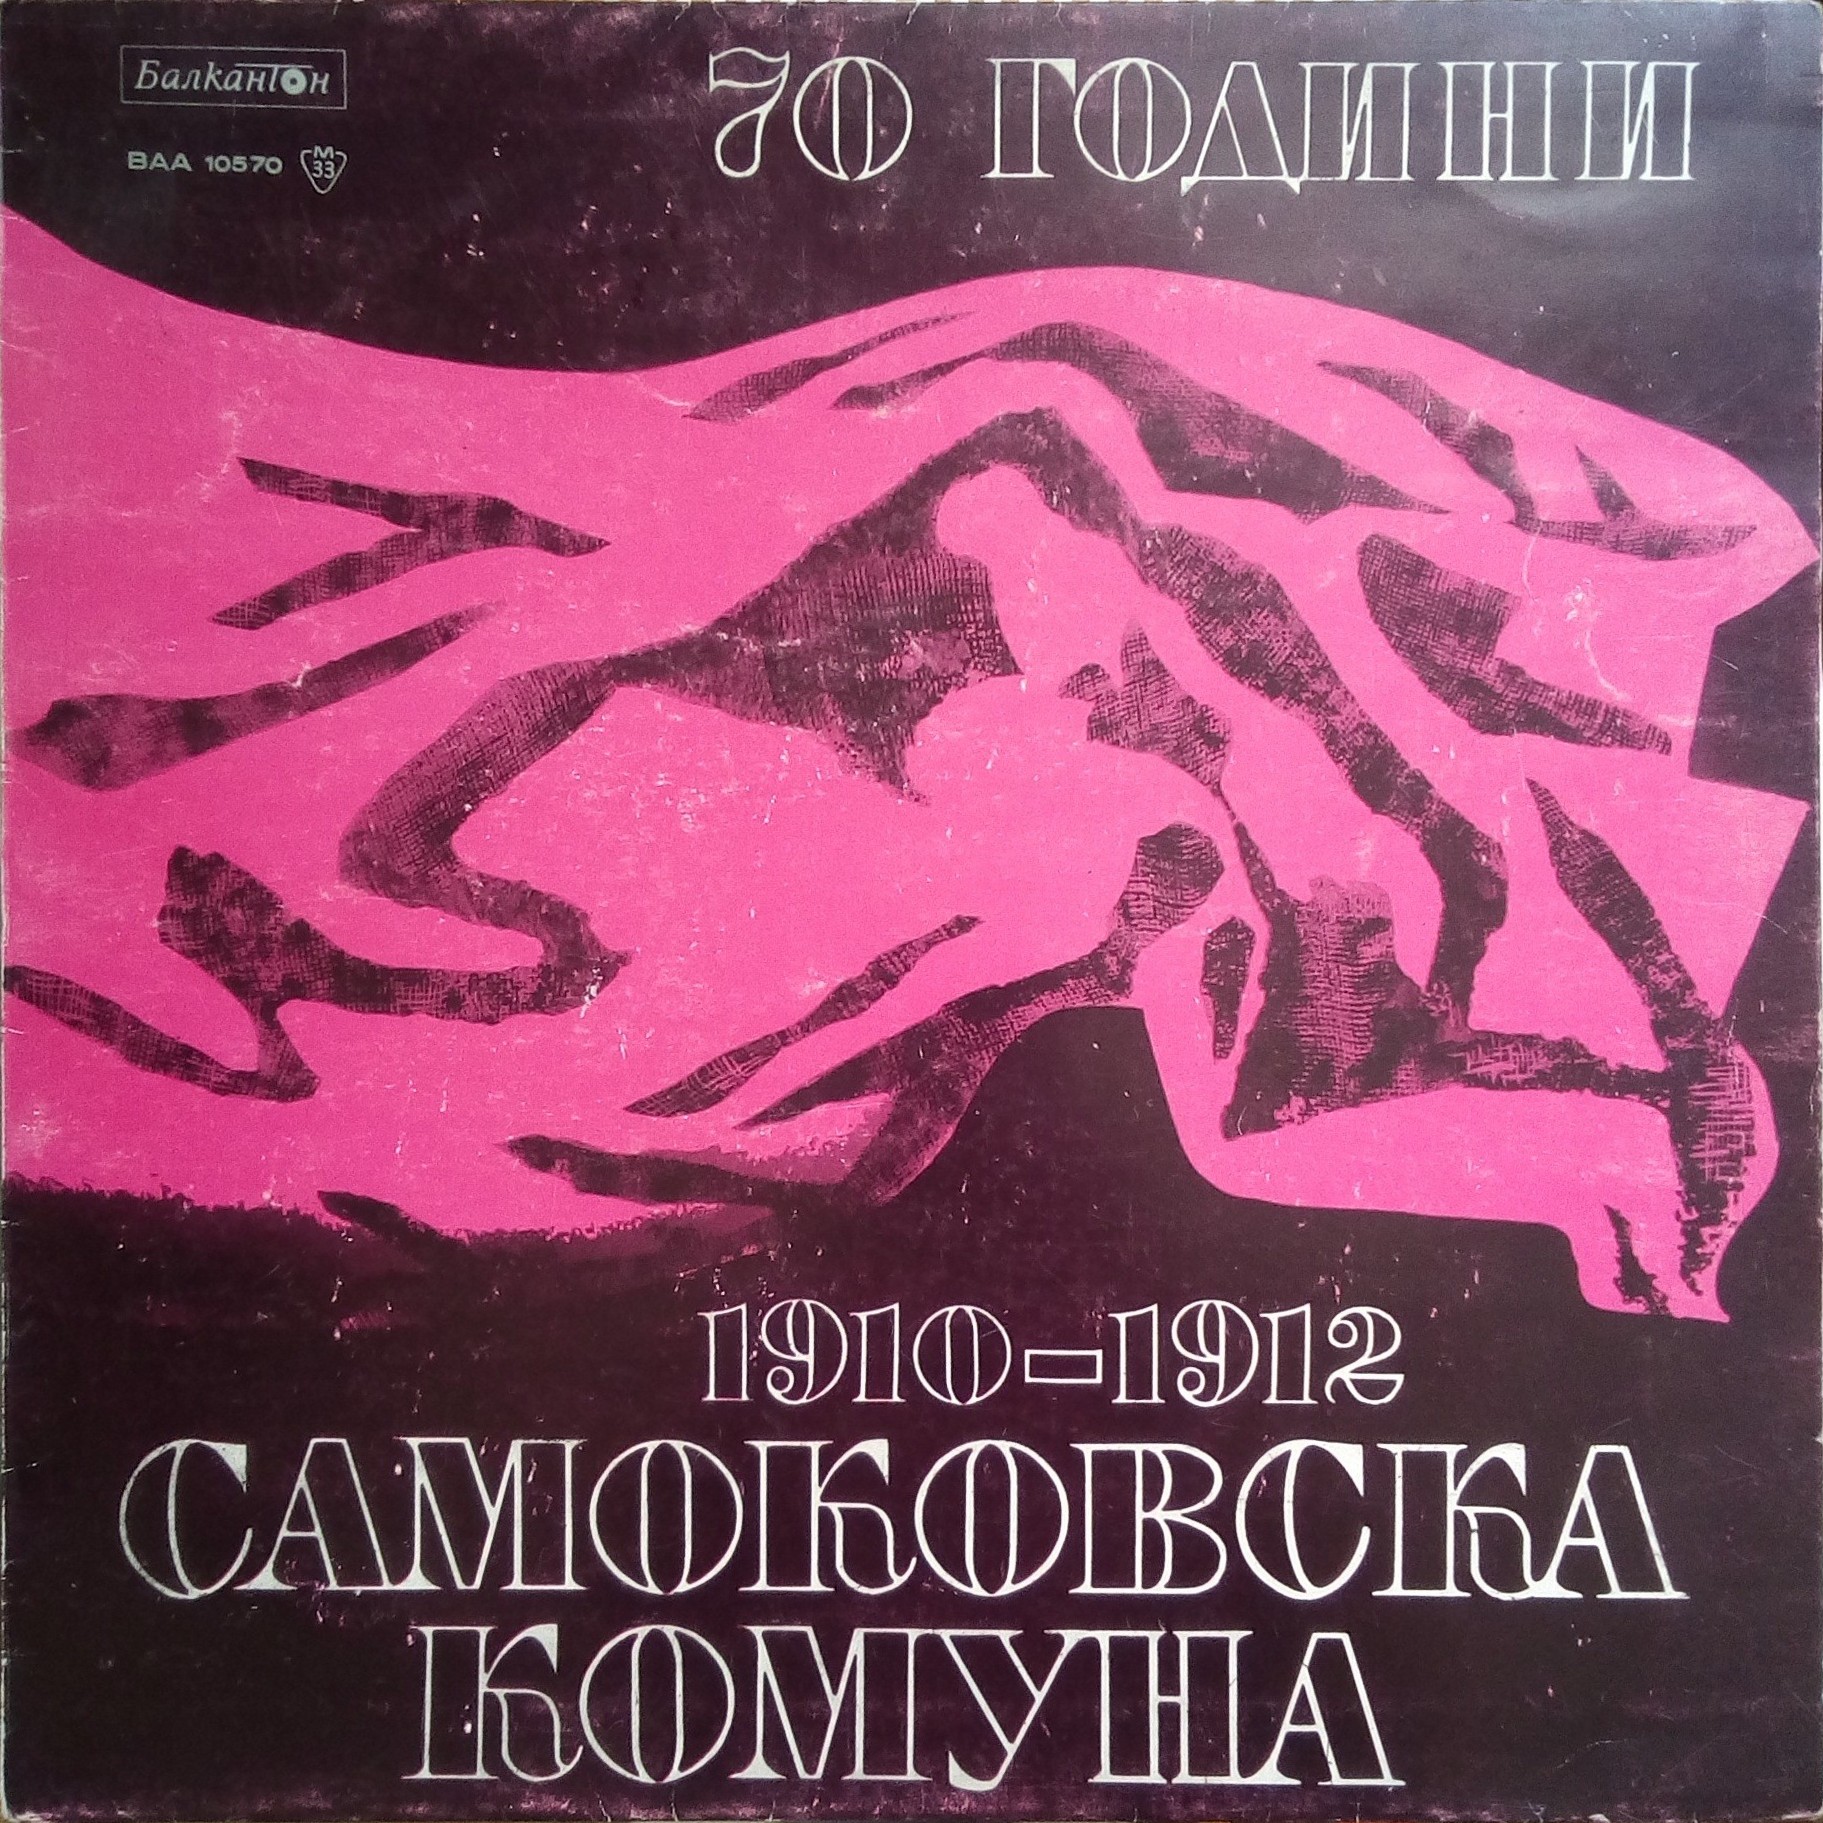 Самоковската комуна 1910-1912 година